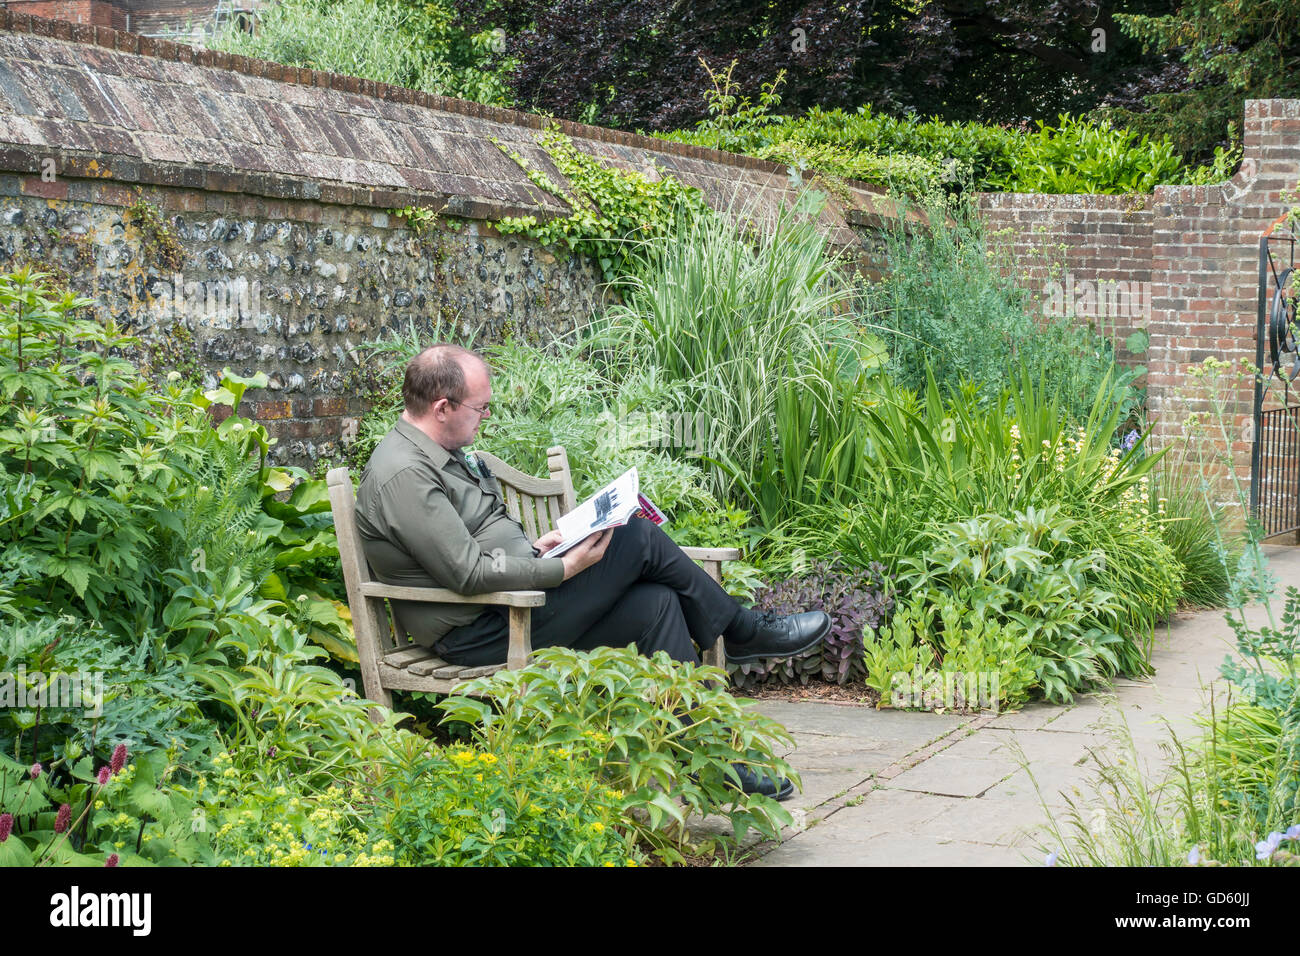 Mann auf Bank lesen Magazine im ruhigen Park Garten Stockfoto